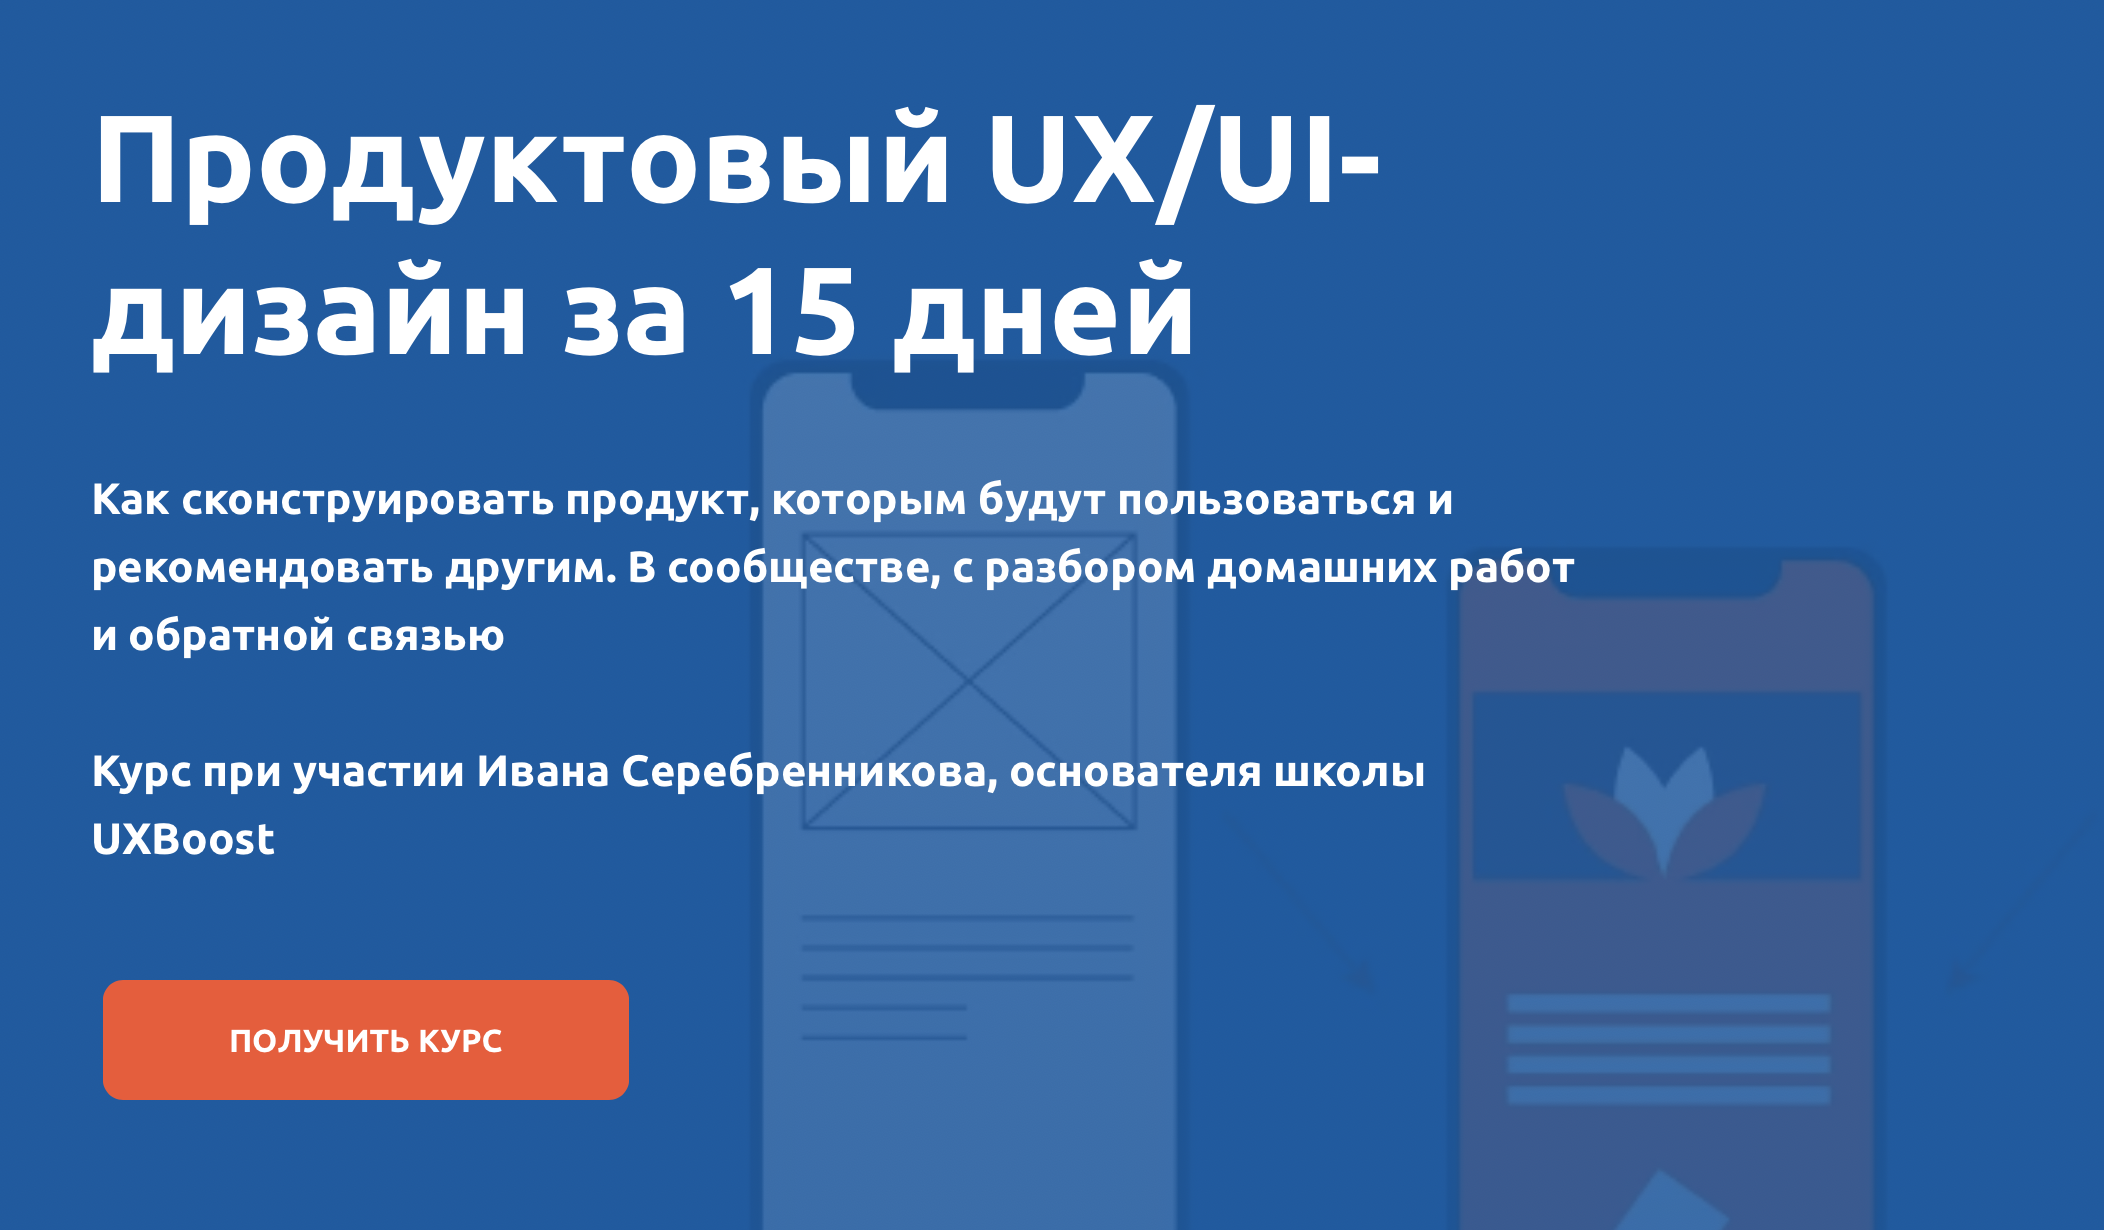 [Product University] UX-UI за 15 дней